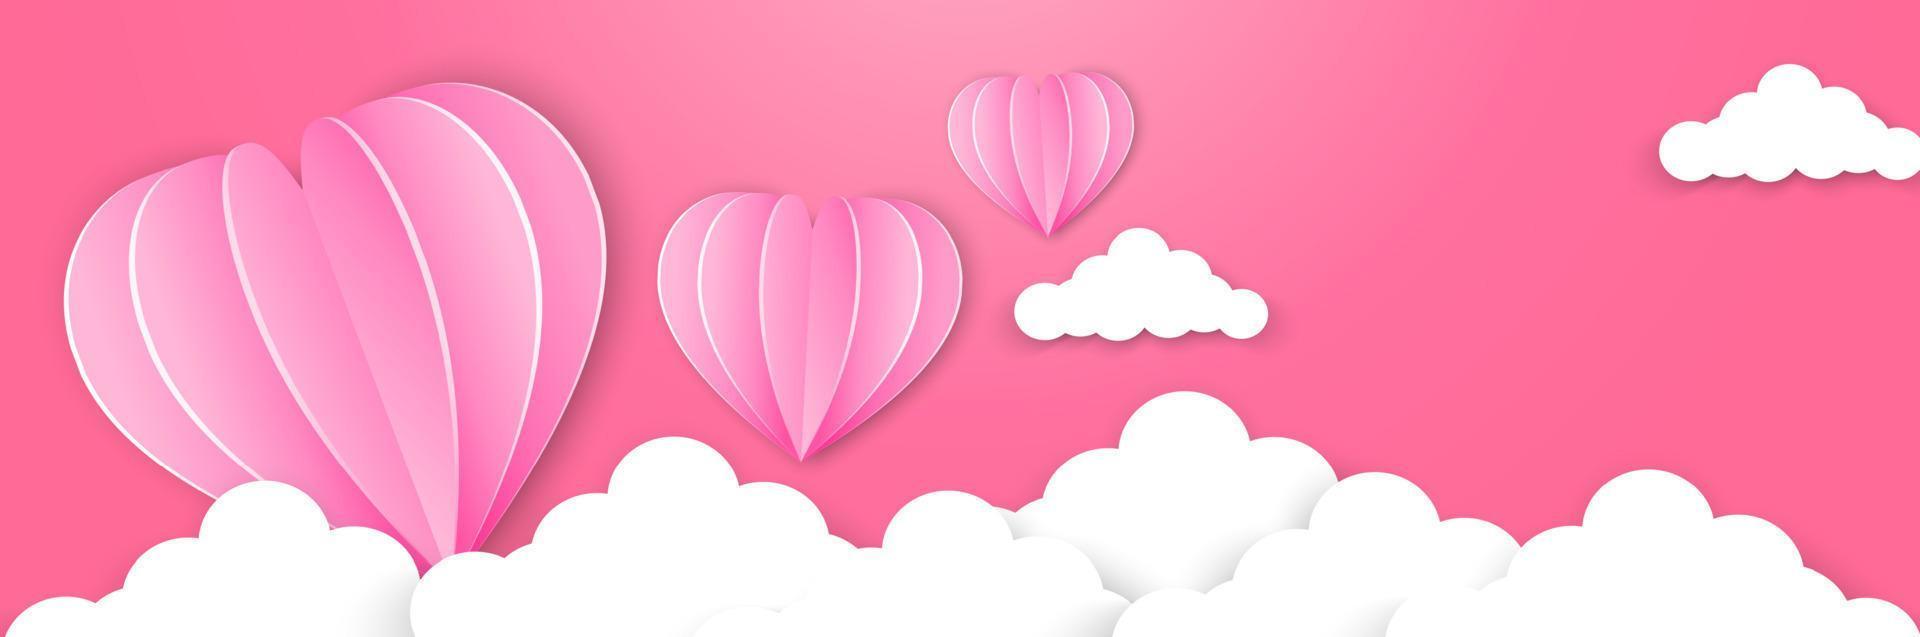 Lycklig valentines dag typografi vektor design med papper ballonger i de himmel röd rosa hjärta form skära vit moln vektor bild av kärlek